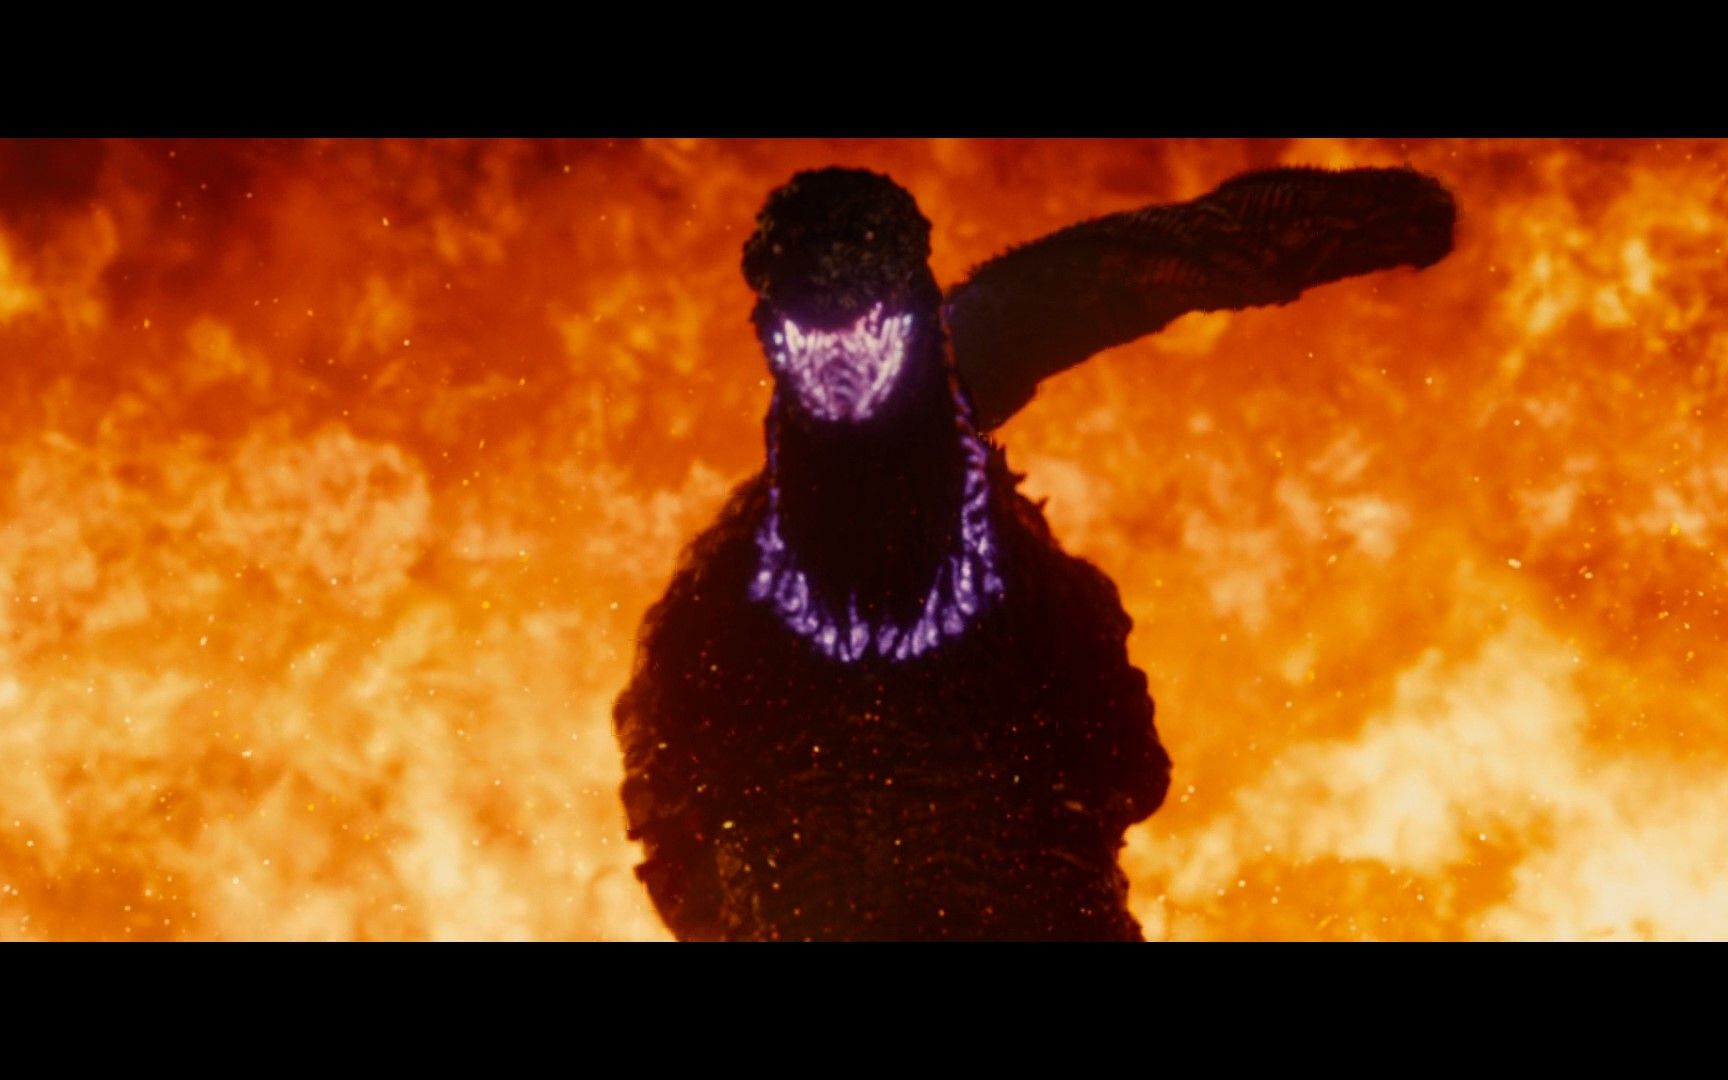 Shin Godzilla surrounded by fire